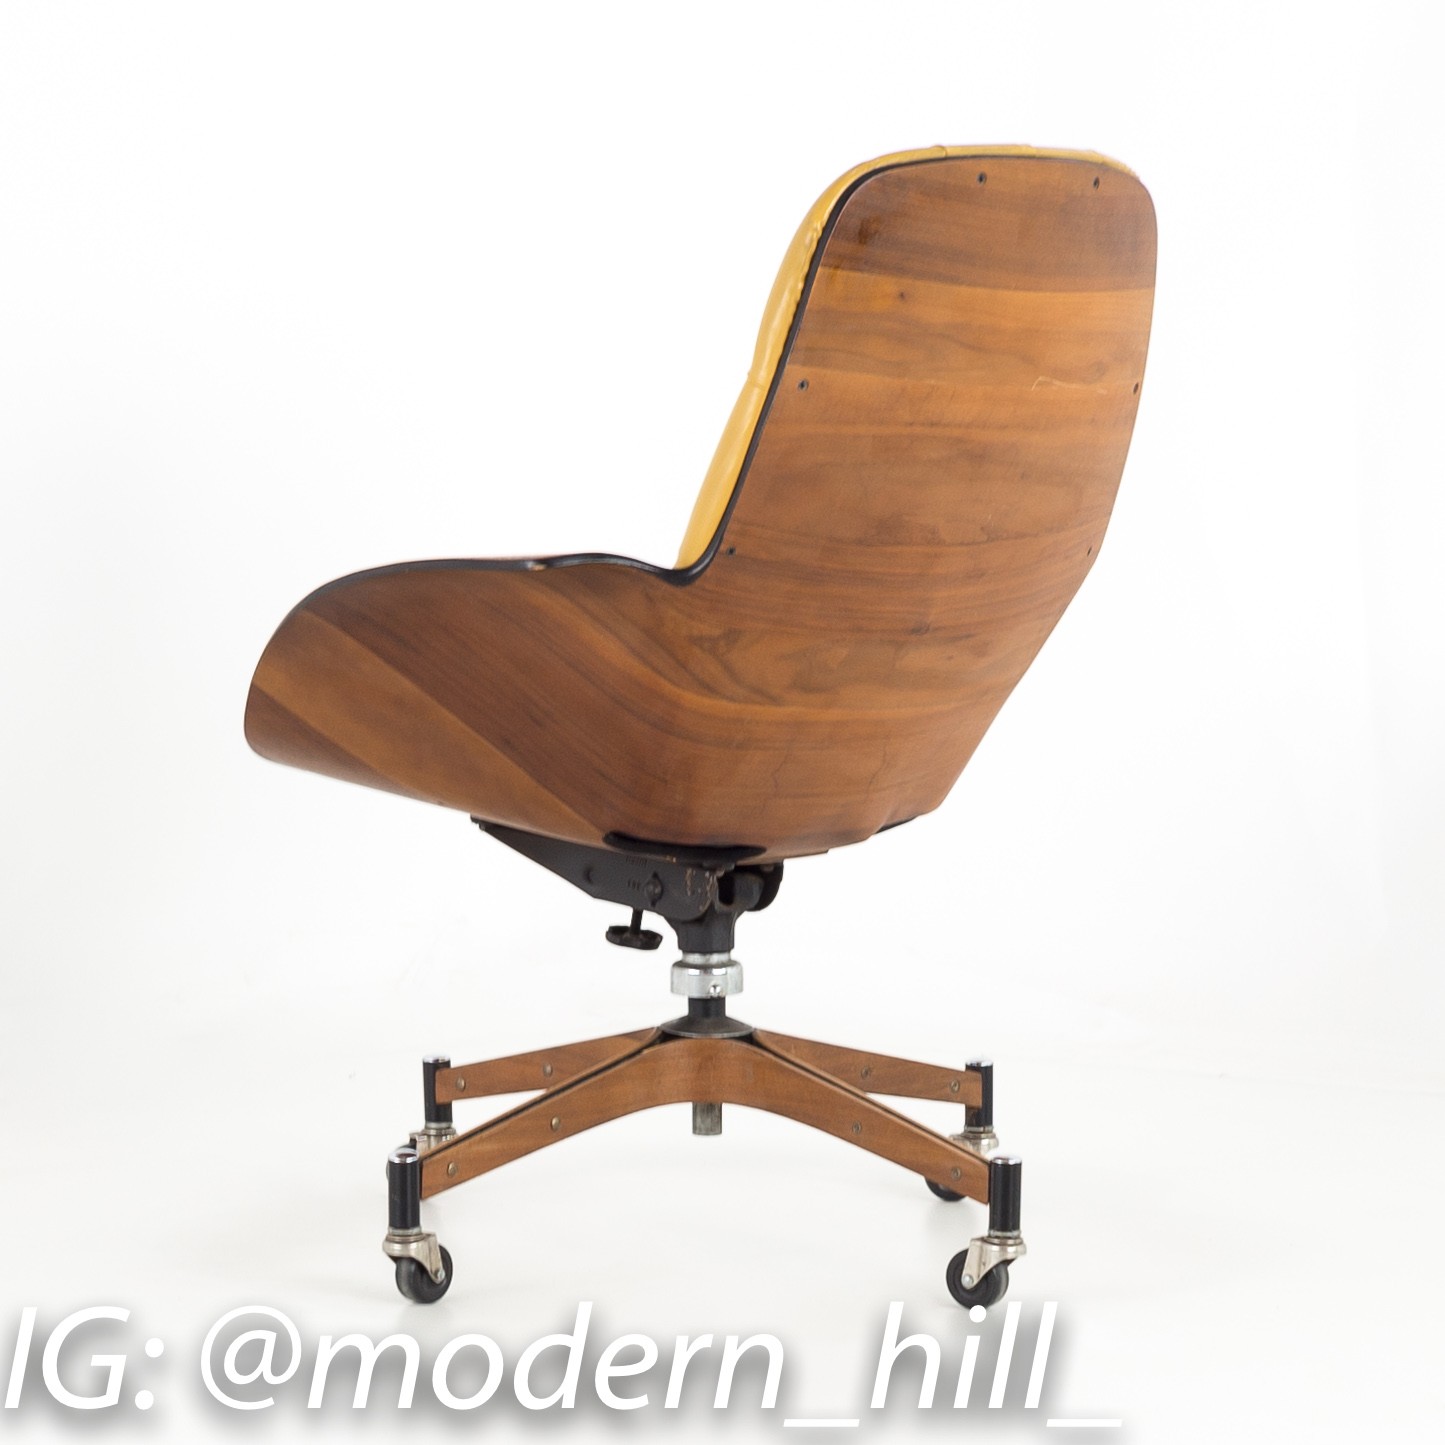 Plycraft Mister Mid Century Modern Desk Chair